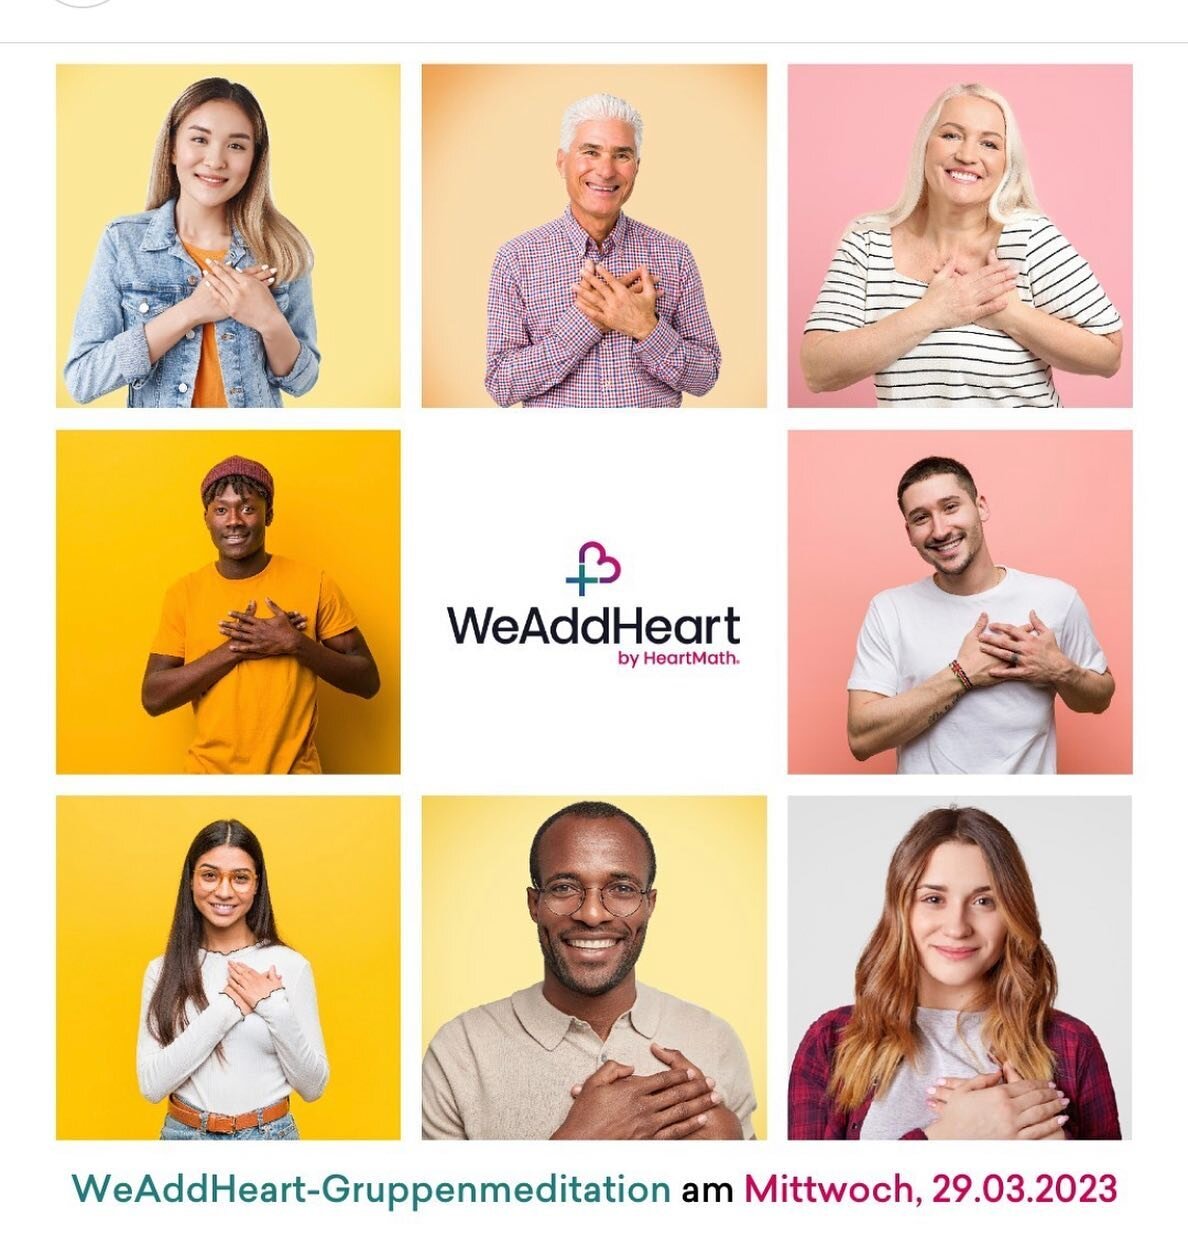 +💜 WeAddHeart by HeartMath&reg;. Kostenlose Gruppenmeditation online am Mi. 29.03.2023 um 20 Uhr.
Anmeldung: Link in Bio

WeAddHeart ist eine weltweit wachsende Initiative von HeartMath&reg;, die Menschen dazu bef&auml;higt, sich mit ihrem Herzen un